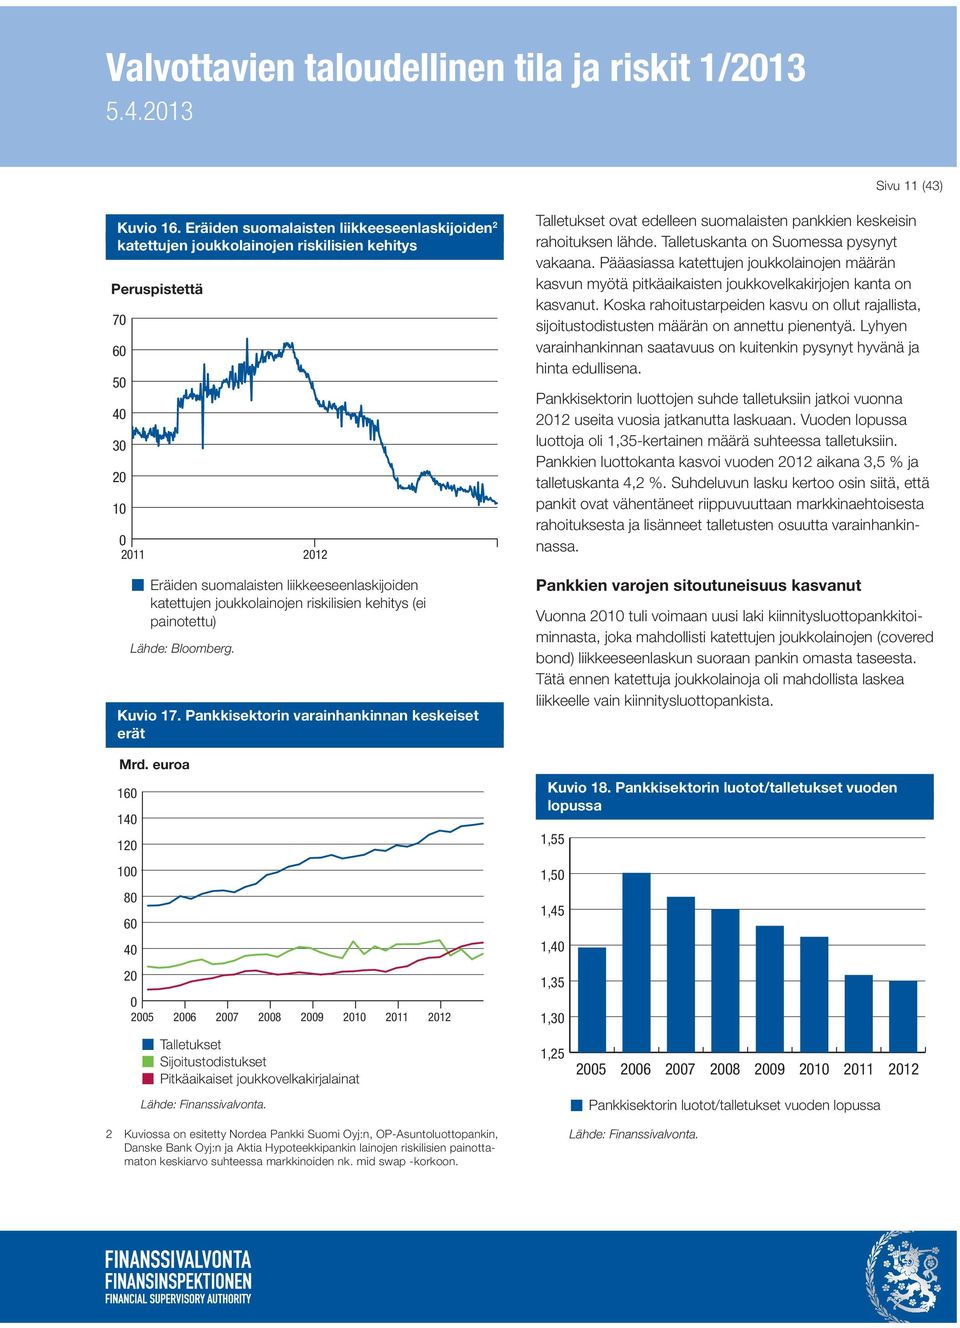 riskilisien kehitys (ei painotettu) Lähde: Bloomberg. Kuvio 17. Pankkisektorin varainhankinnan keskeiset erät Mrd.